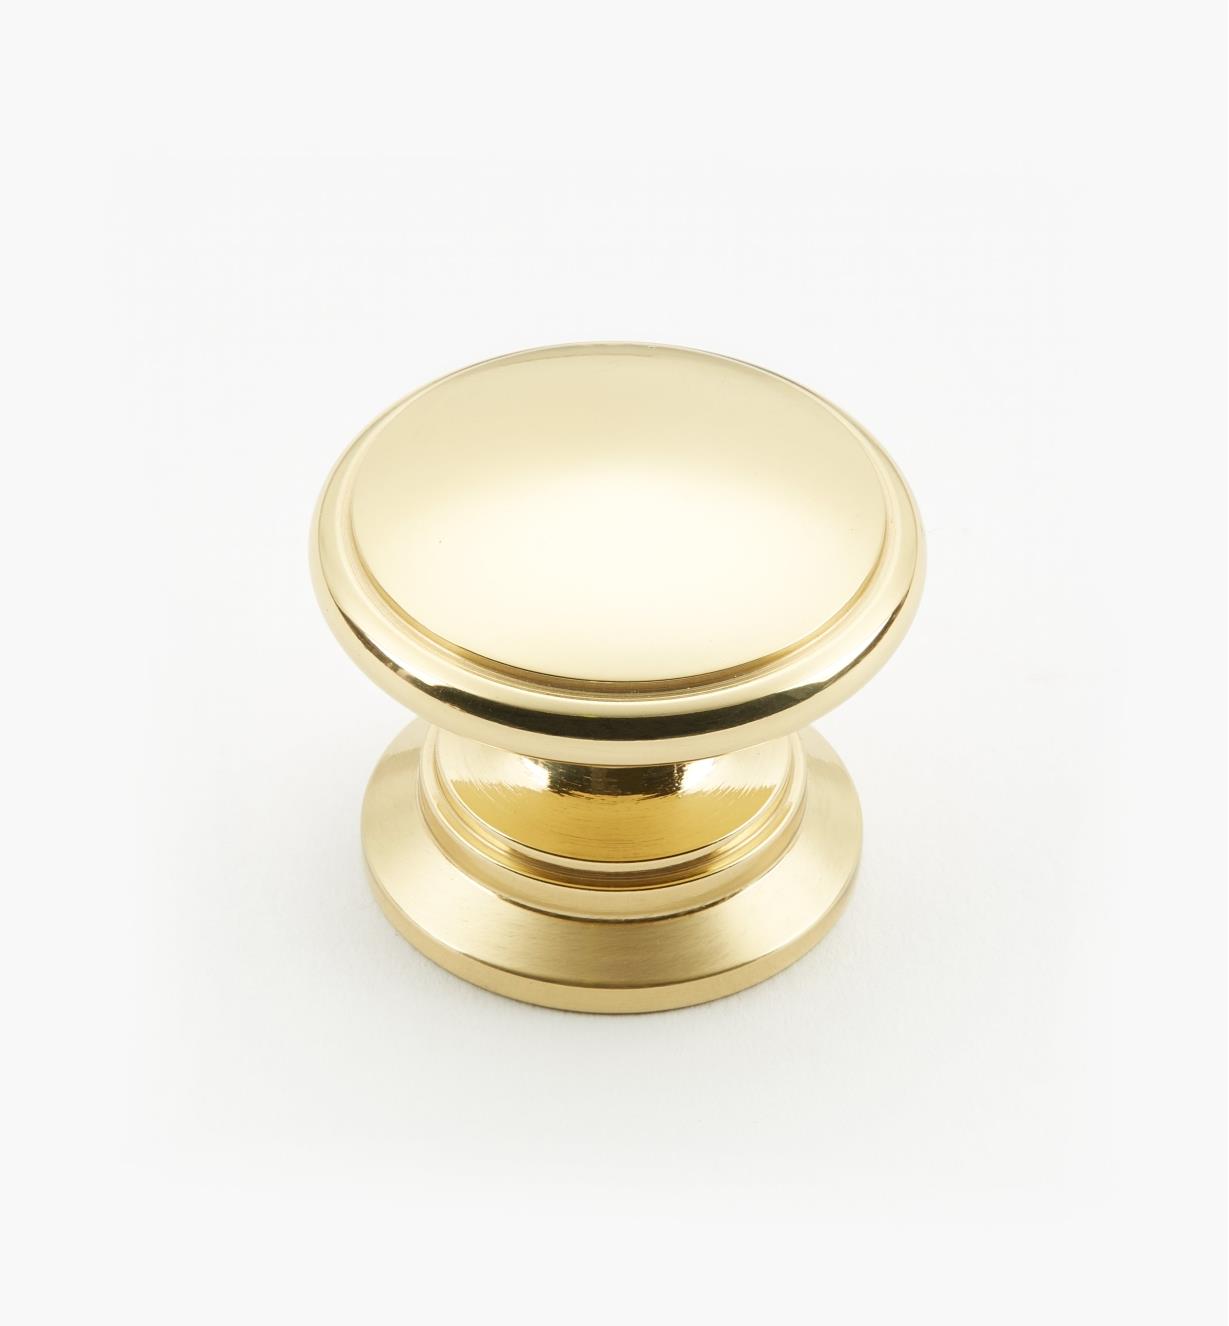 02W2642 - Polished Brass Suite - 1 1/4" x 1" Round Brass Knob